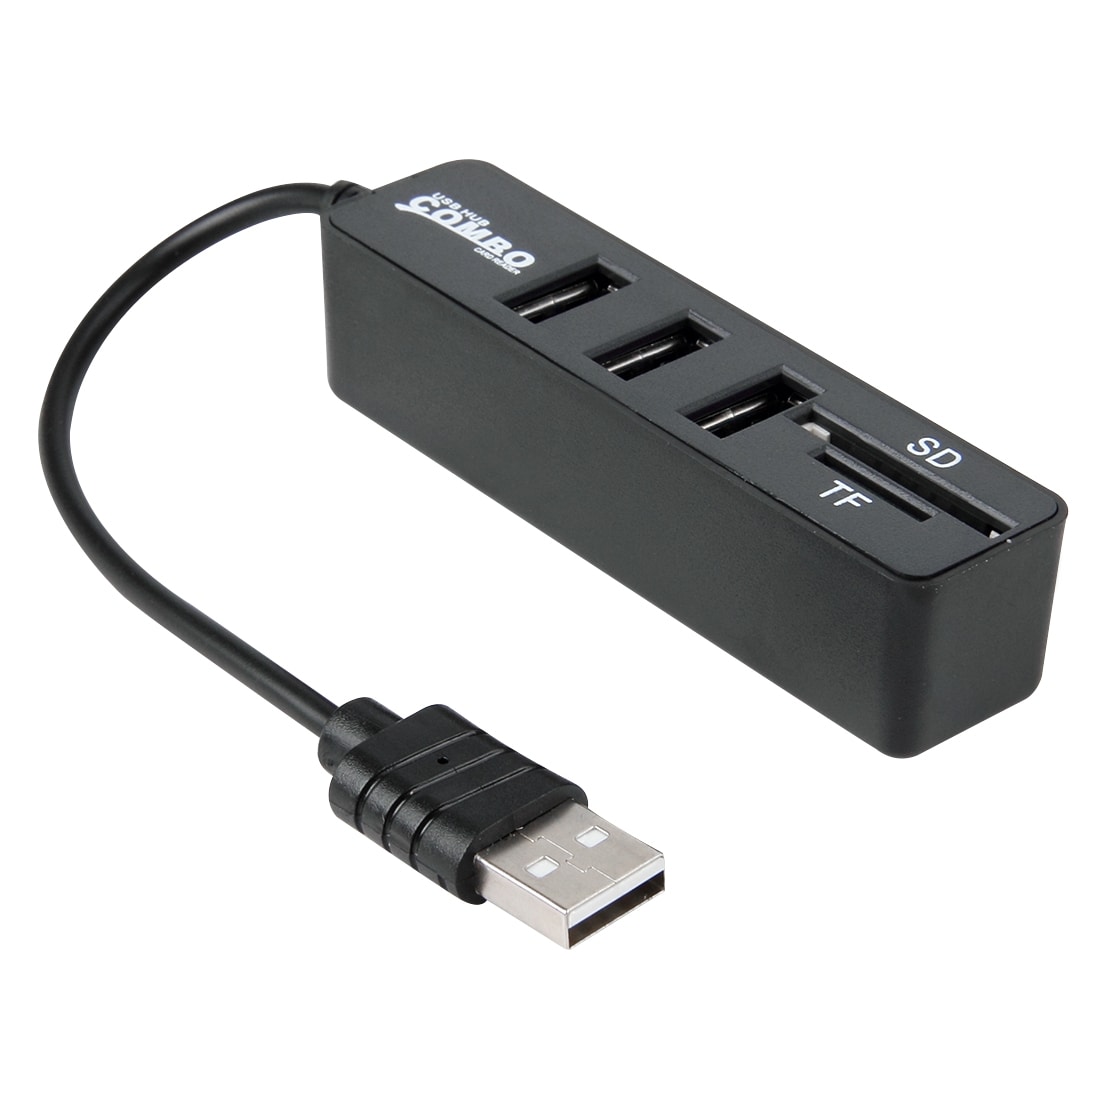 USB Kortläsare / Hubb - 2i1